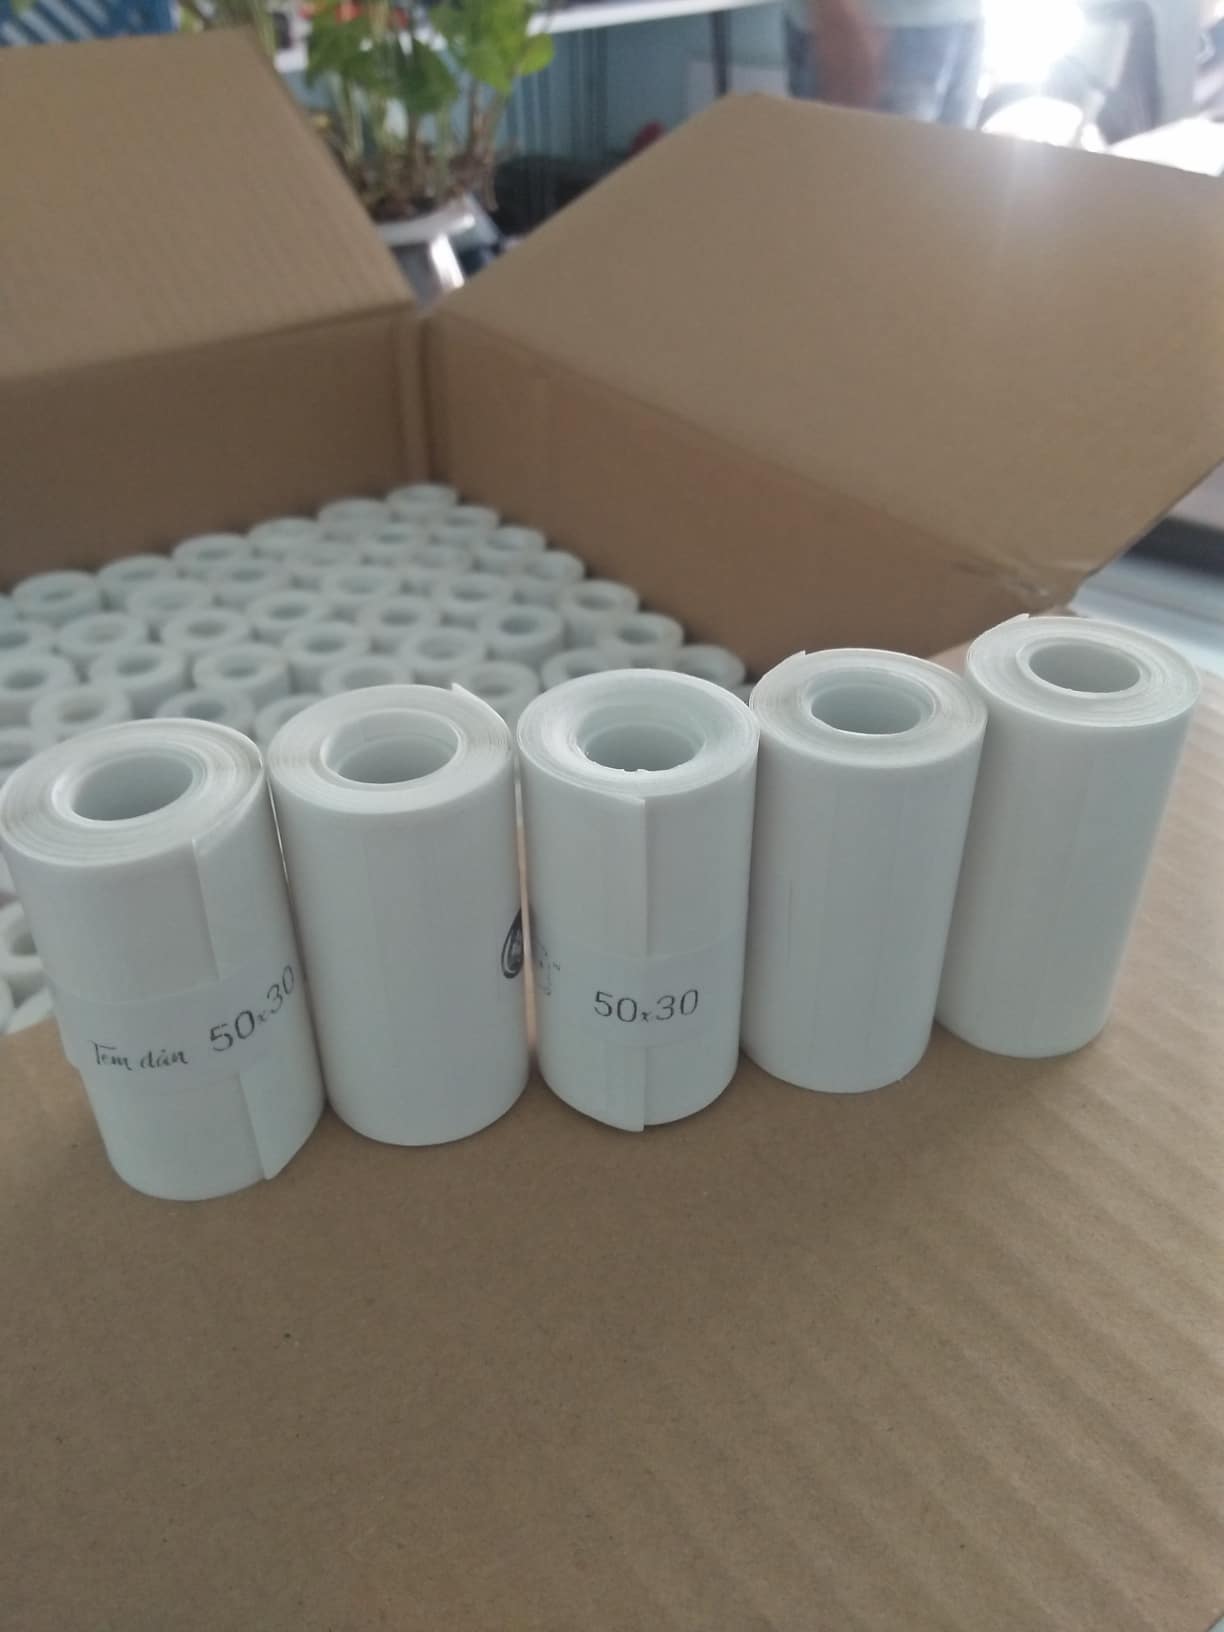 Giấy in nhiệt tem nhãn 50x30mm  cuộn nhỏ dành cho máy in cầm tay ( 5 cuộn giấy)